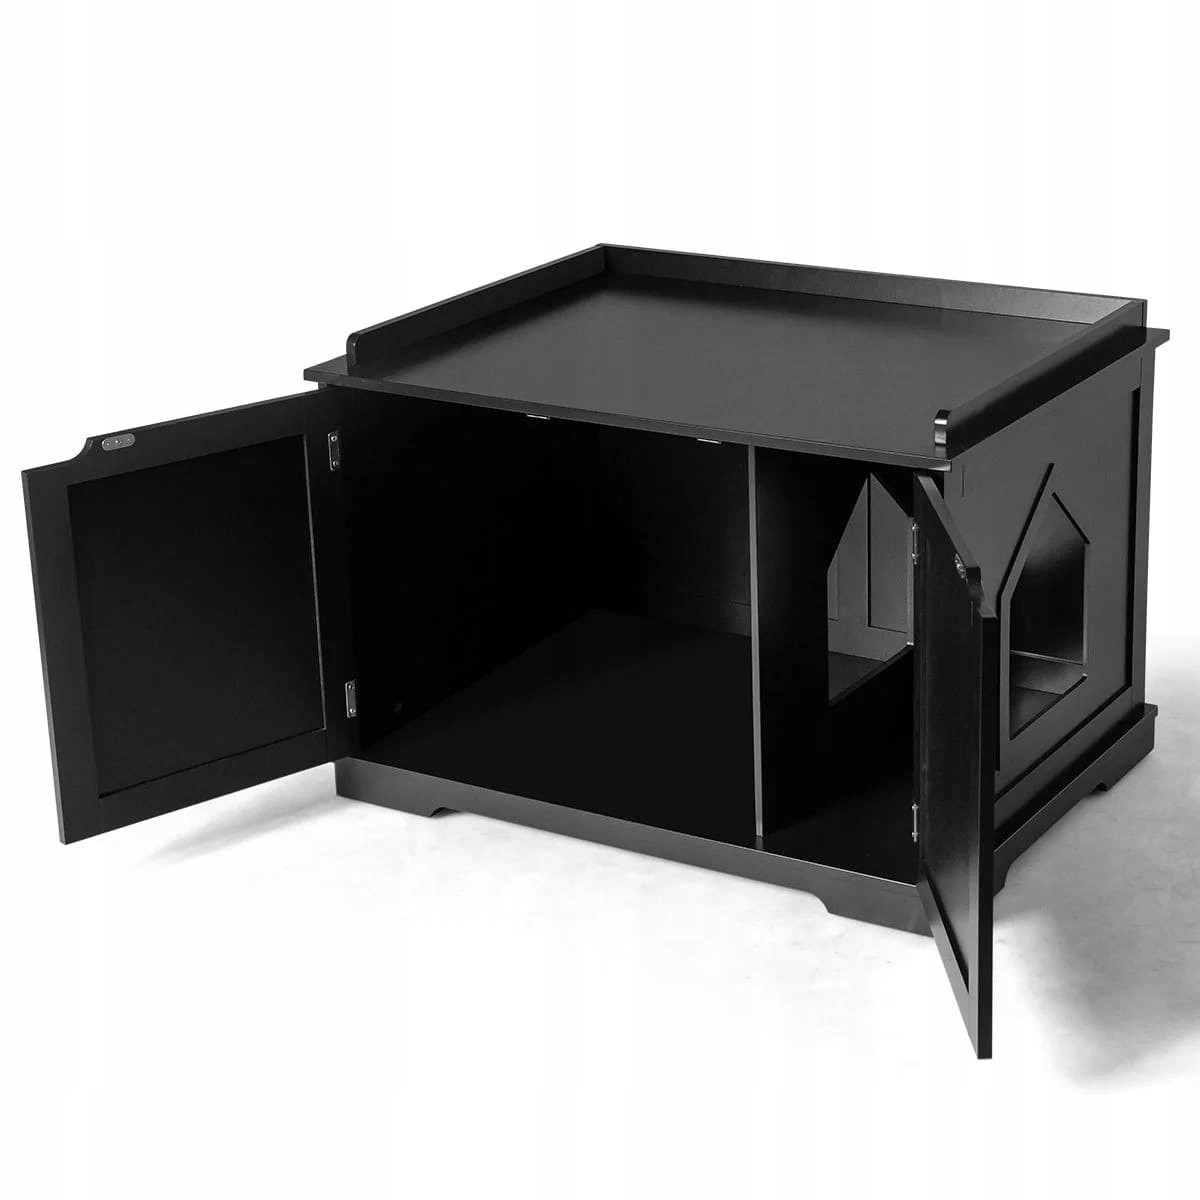 Budka/Domeček pro kočky Costway černý obdélníkový 75 cm x 54 cm